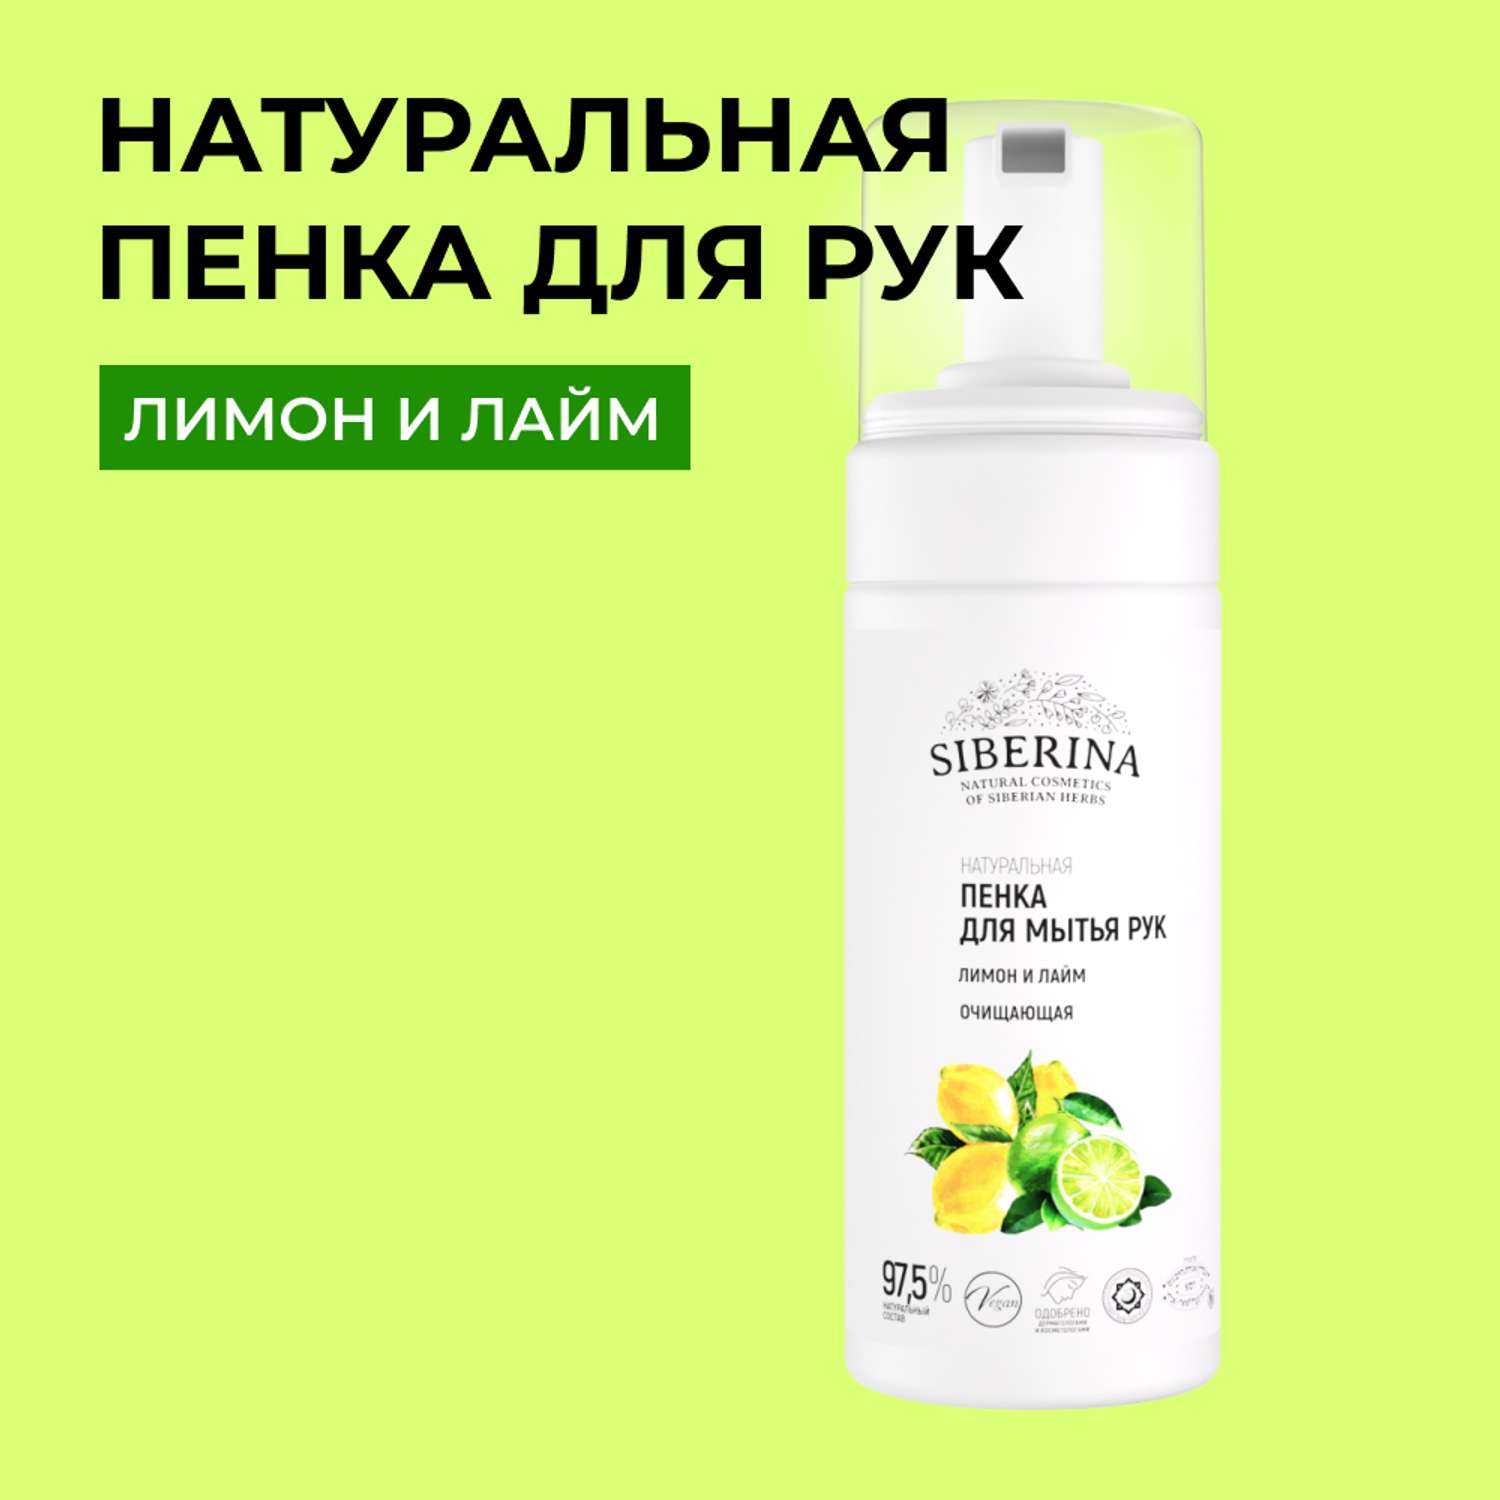 Пенка для мытья рук Siberina натуральная «Лимон и лайм» очищающая 150 мл - фото 1